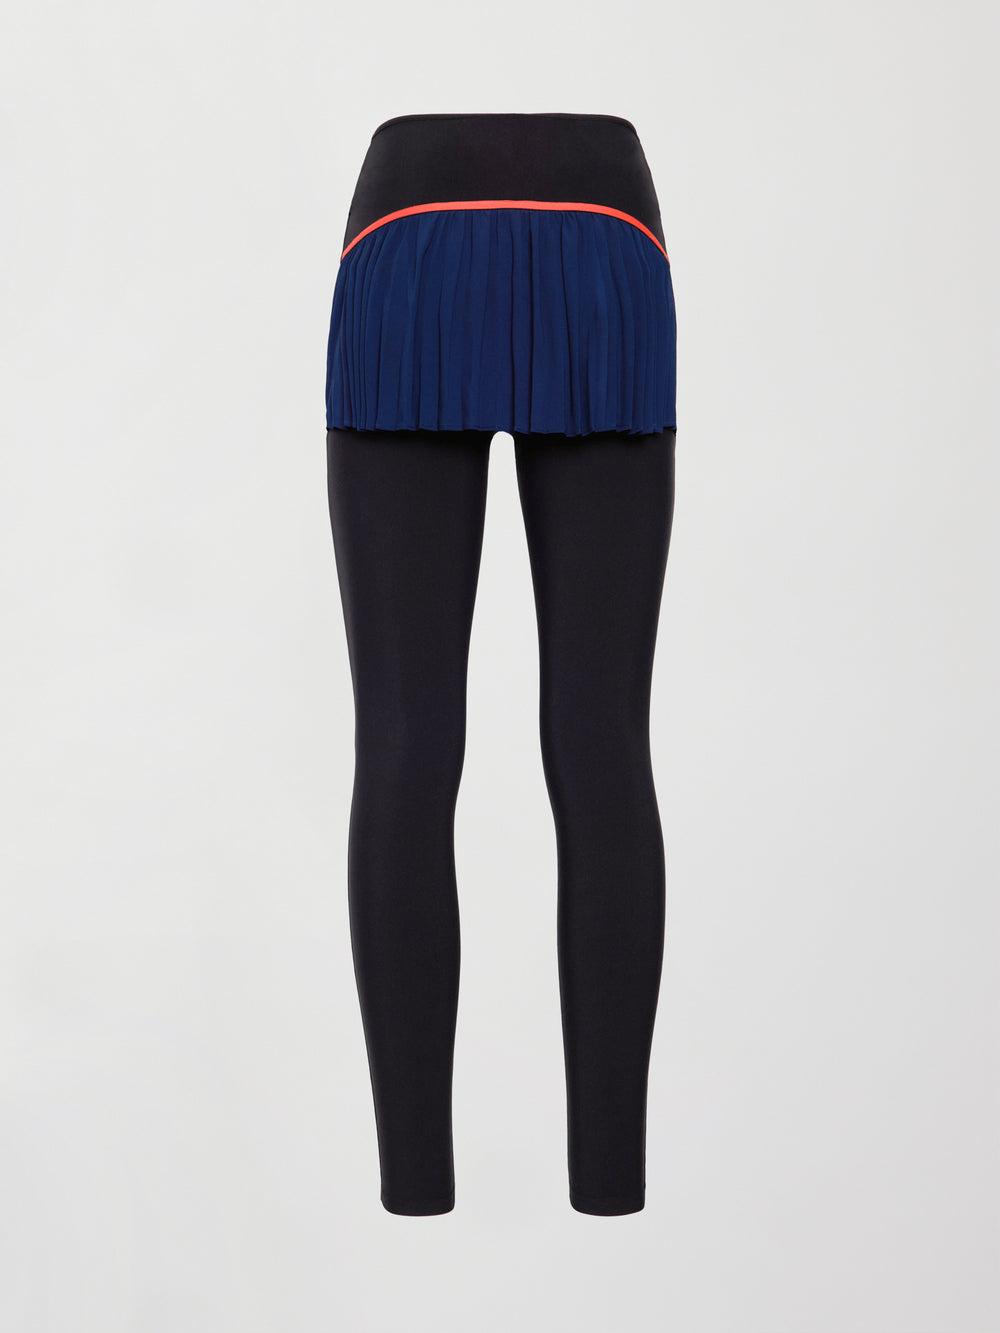 Pleated Skirt Legging in Melt - Black / Navy – Carbon38